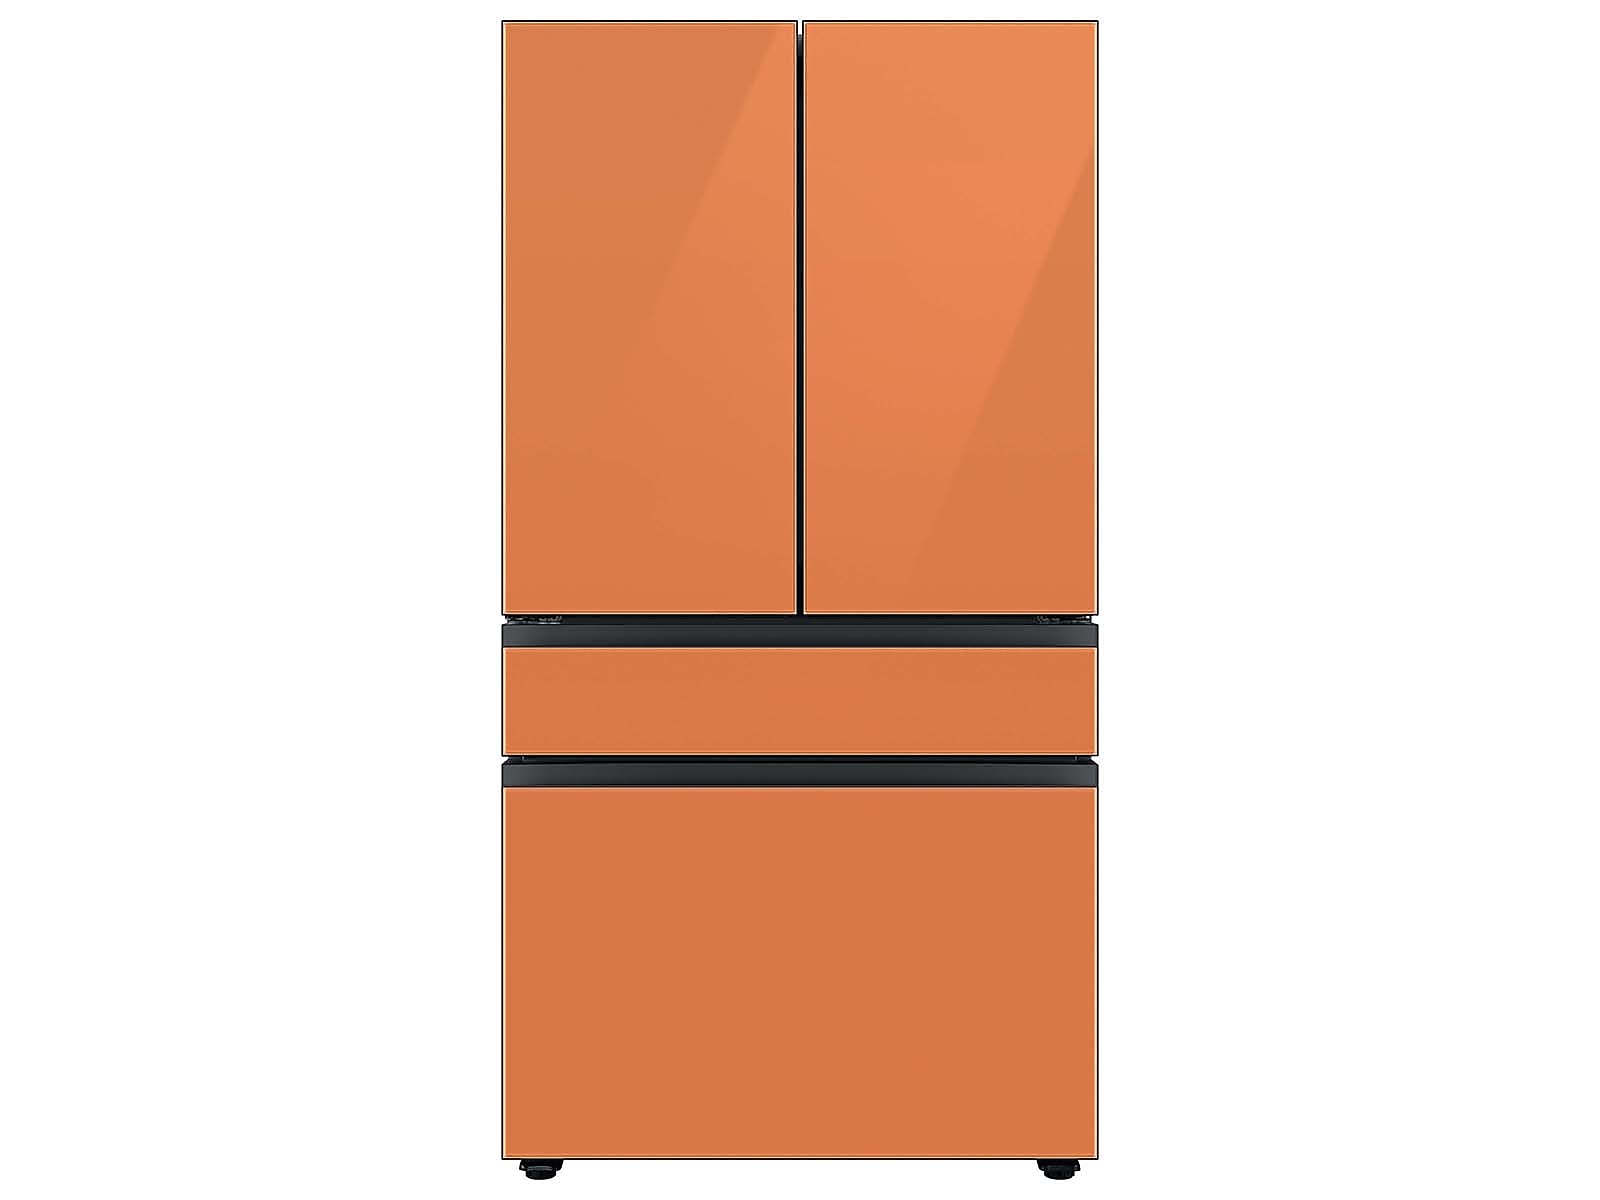 Samsung Bespoke 4-Door French Door Refrigerator (23 cu. ft.) with Customizable Door Panel Colors and Beverage Center™ in Clementine Glass